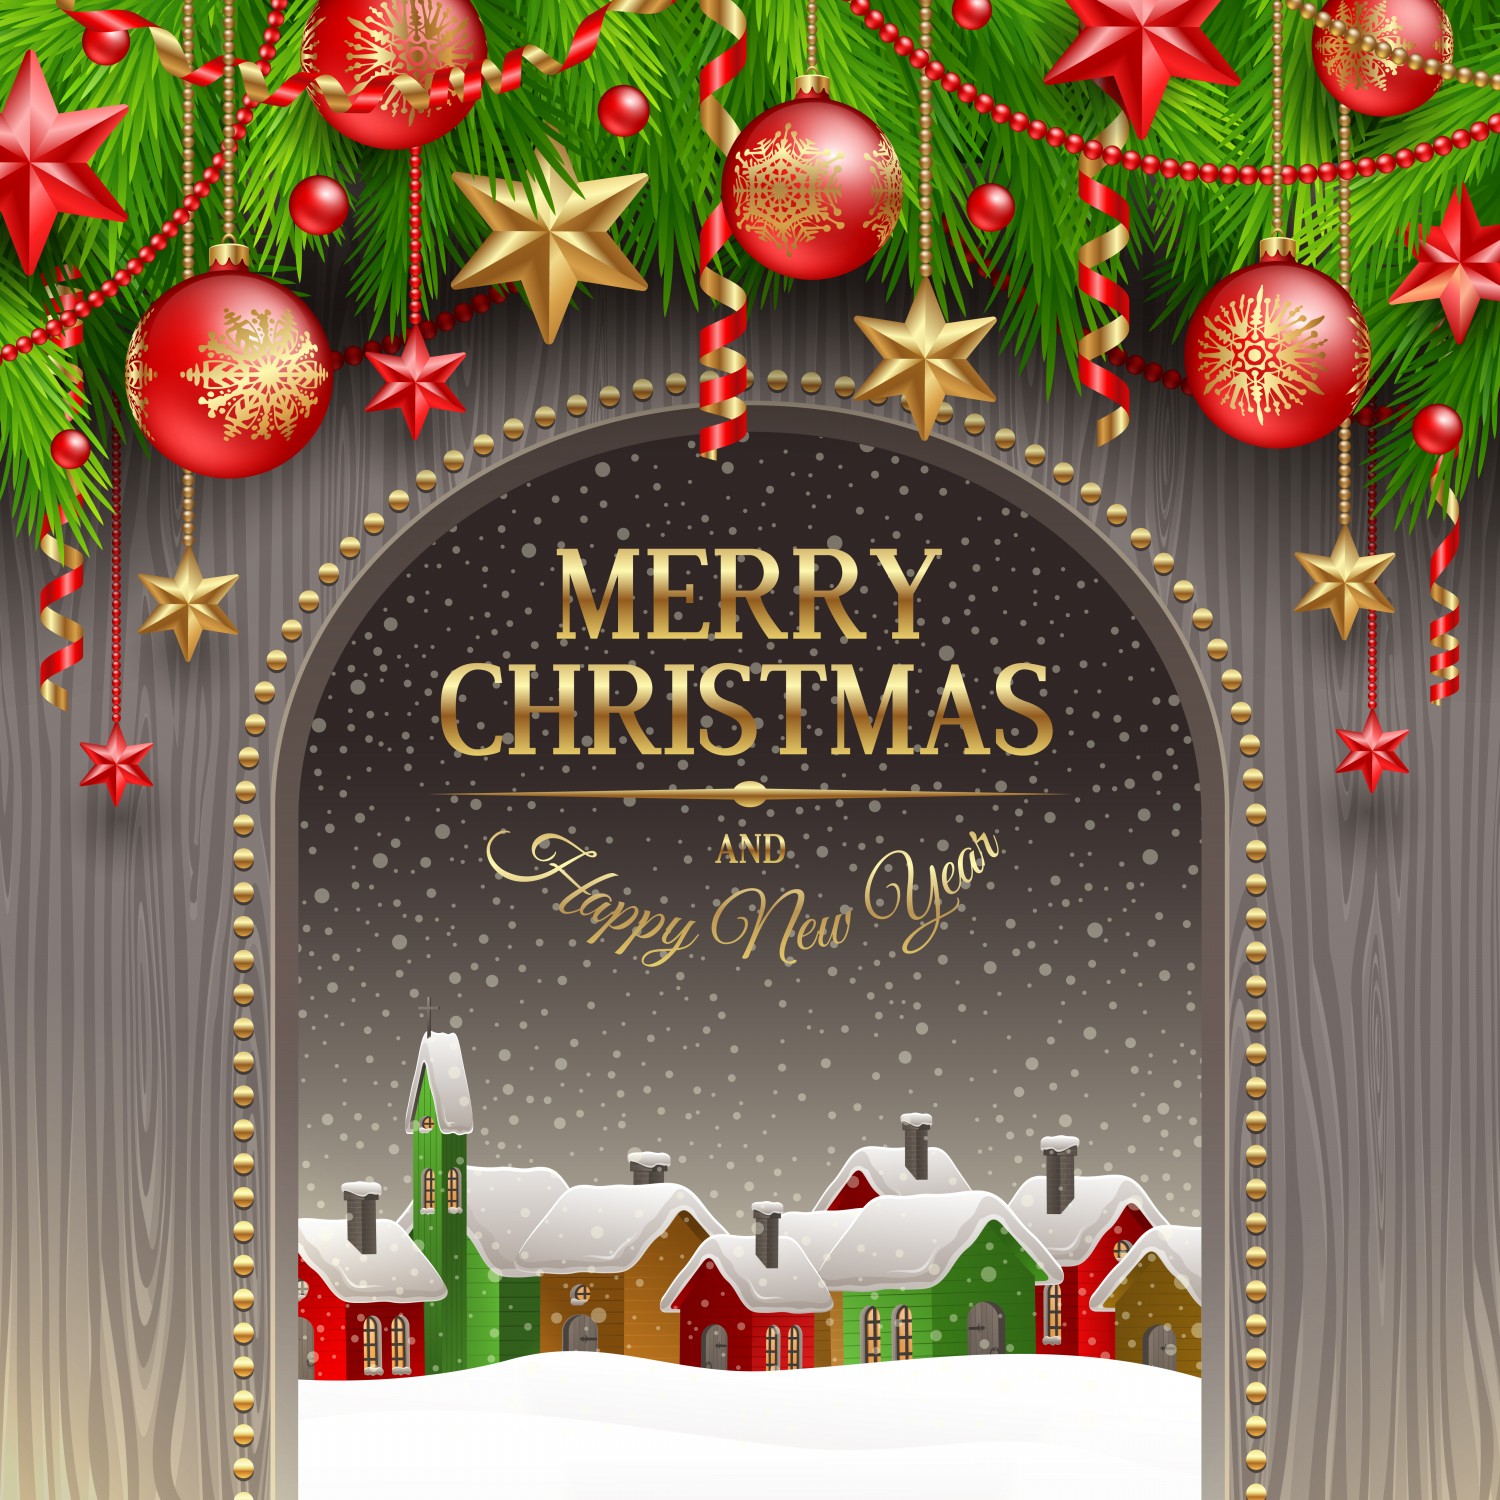 附件 FREE-Christmas-Tree-Lights-Greeting-Cards-2.jpg